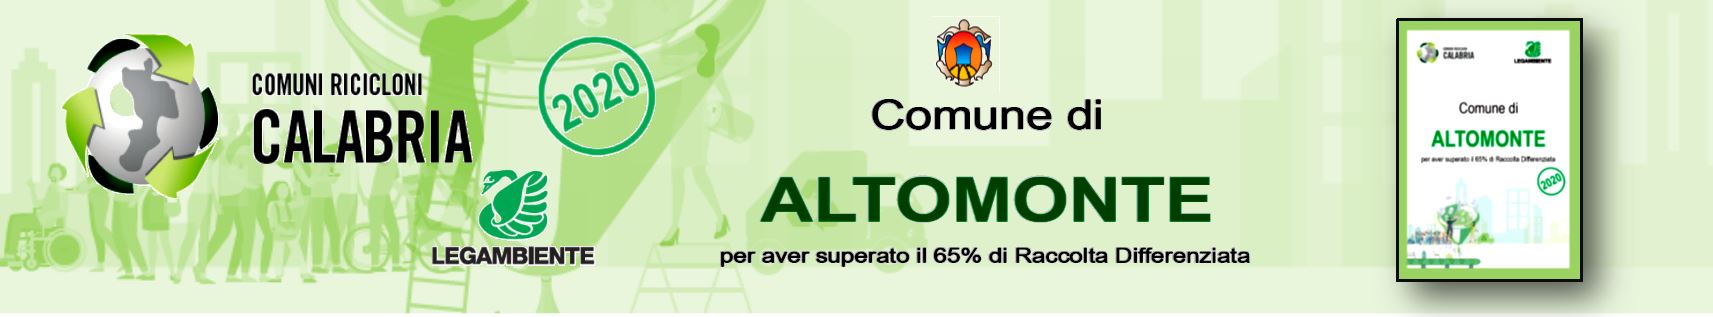 Altomonte - Comune riciclone 2020